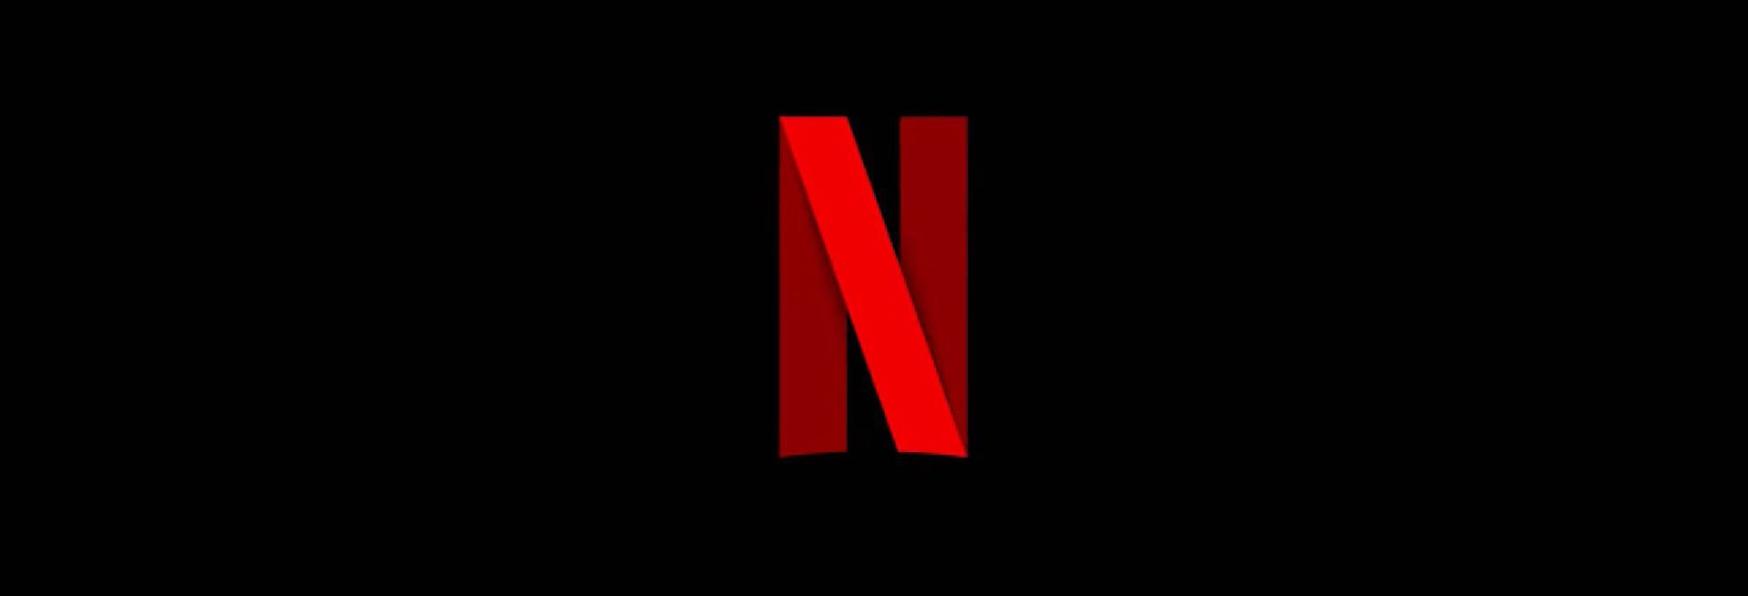 Il Problema dei 3 Corpi: nuova Clip e nuova Data di Uscita della Serie TV Netflix